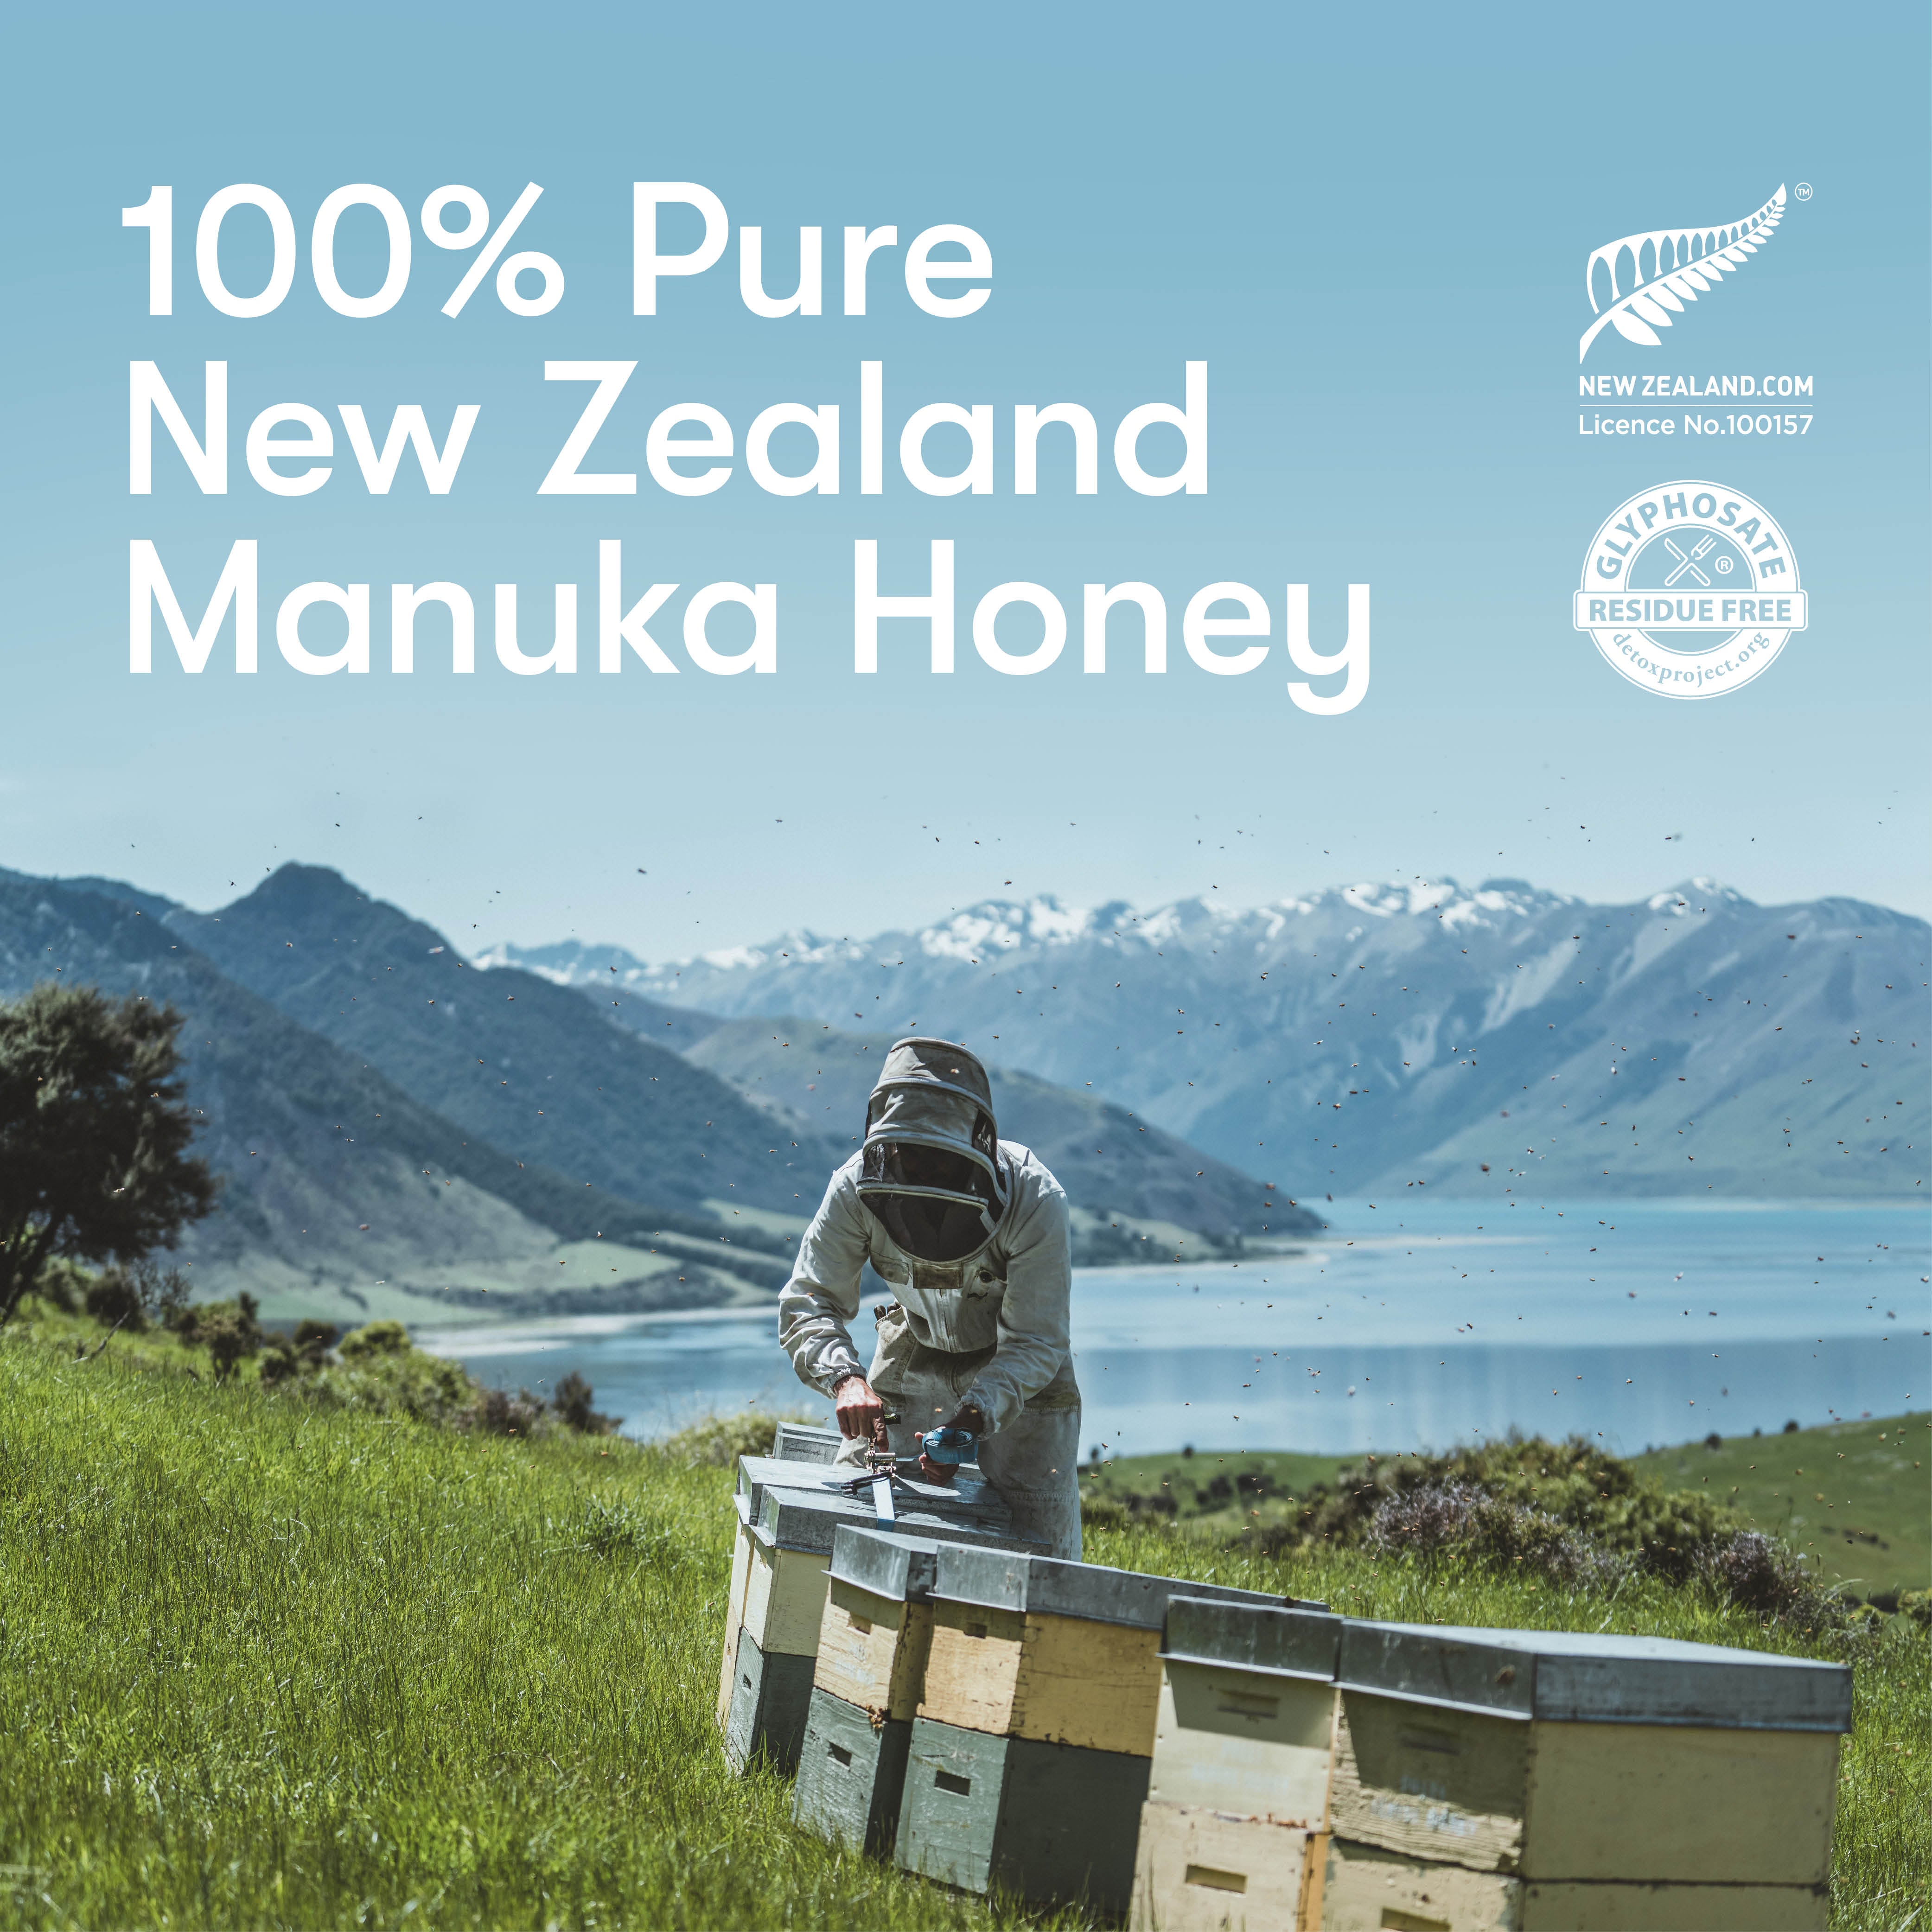 Manuka Honey UMF™ 10+ | MGO 263+